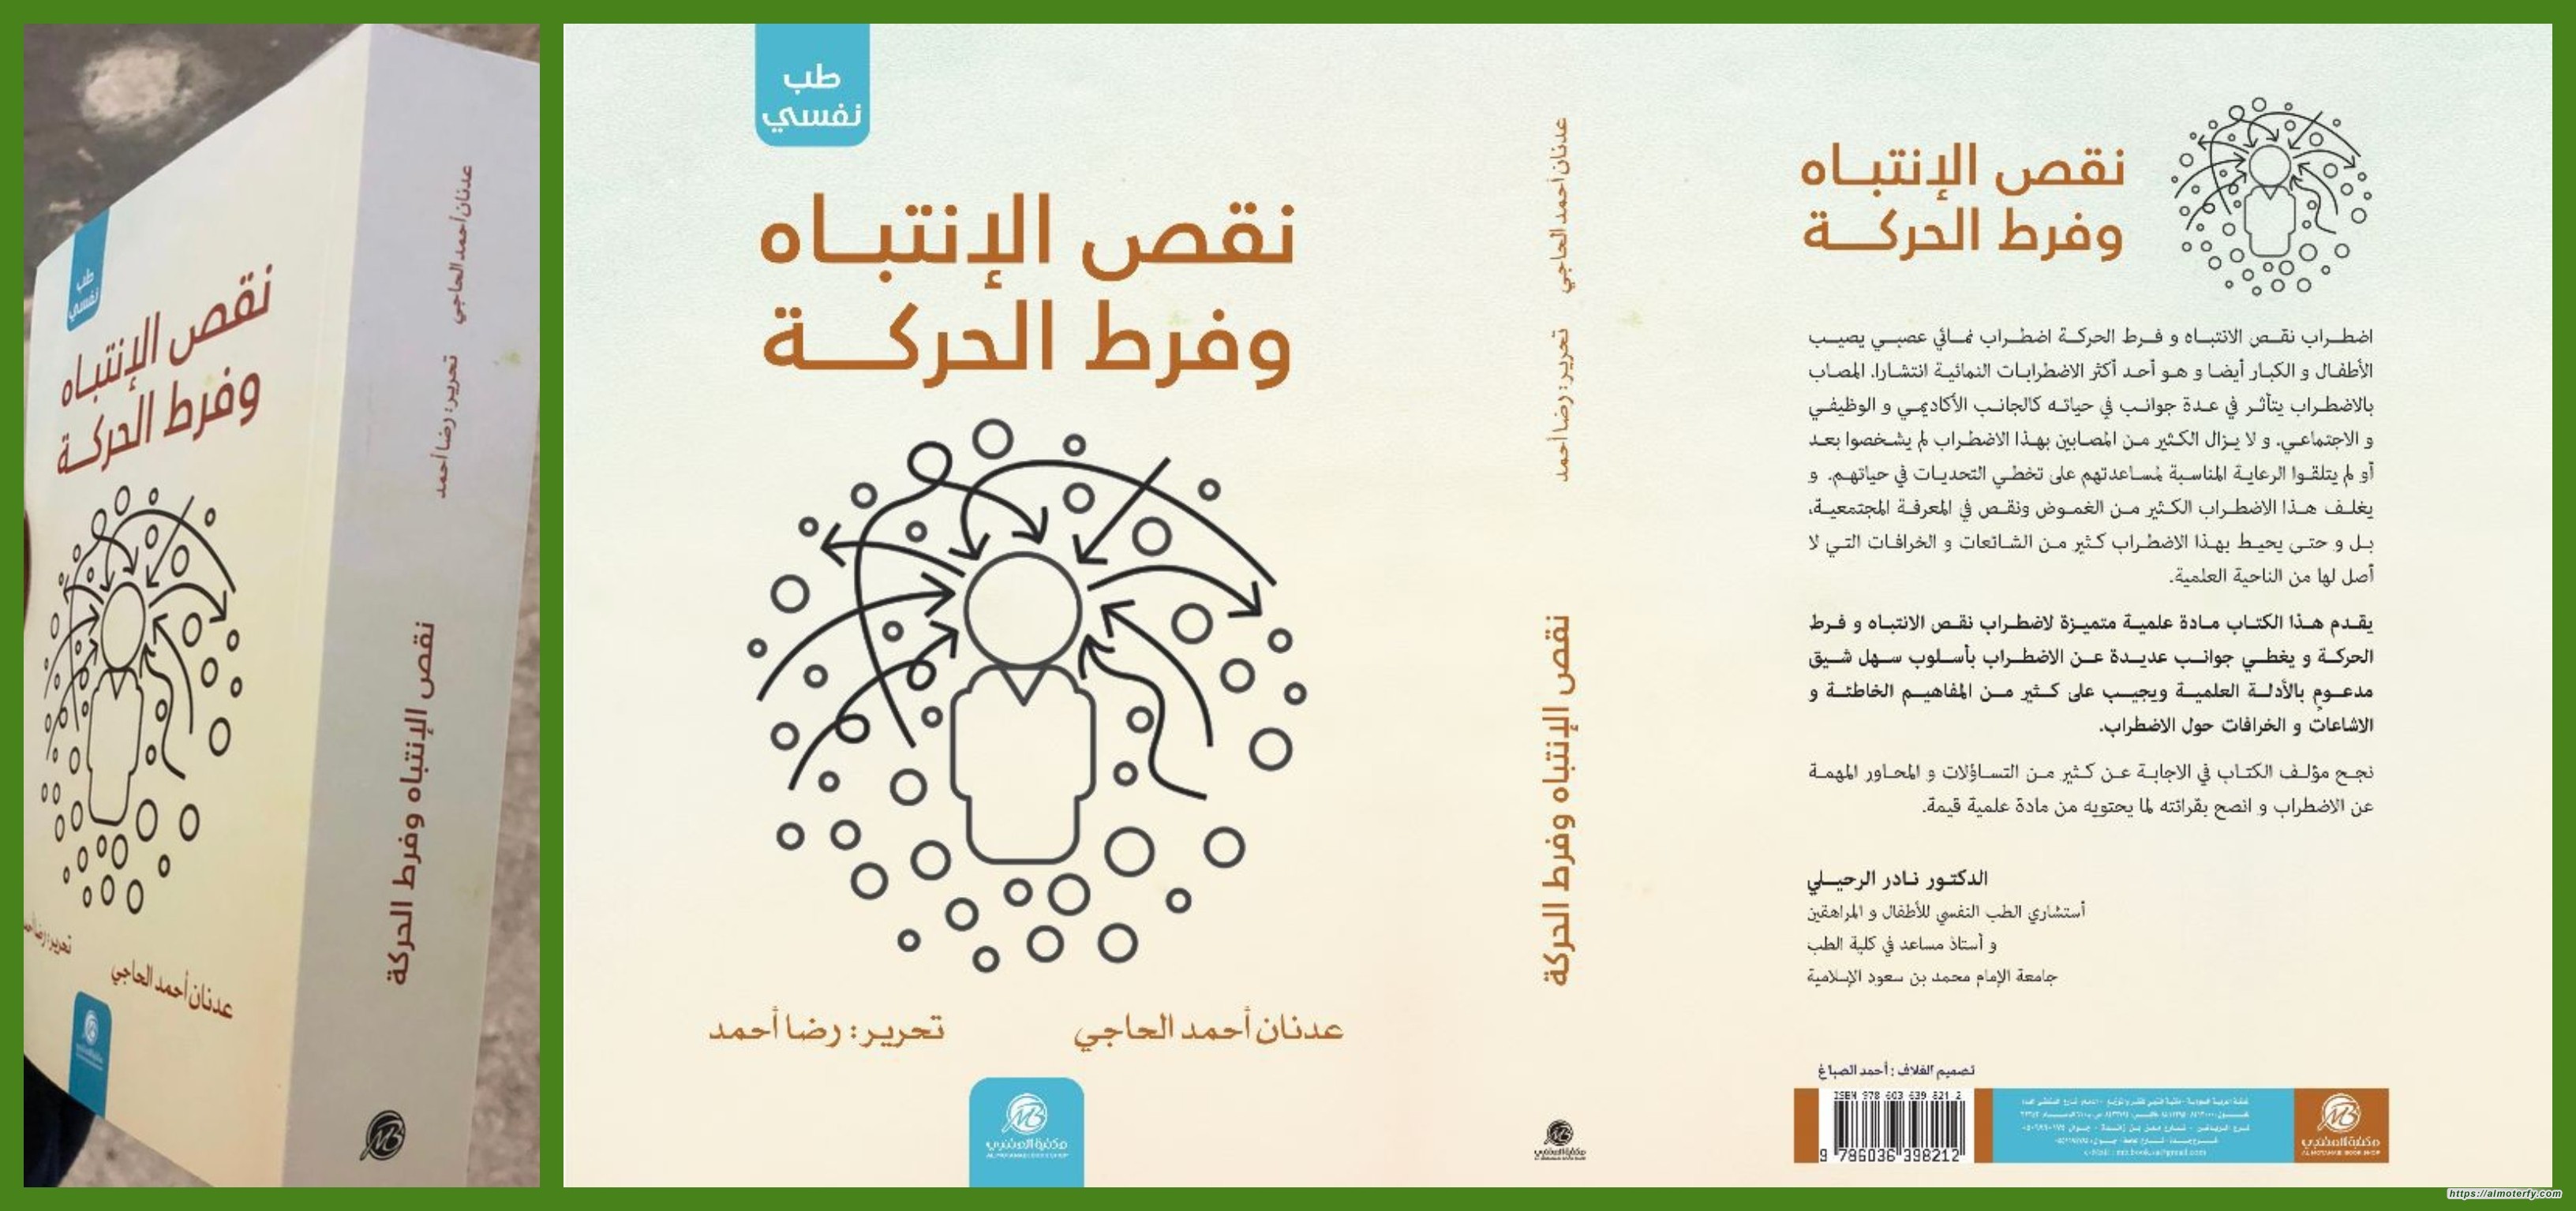 صدور الكتاب الثاني عشر لـ عدنان أحمد الحاجي